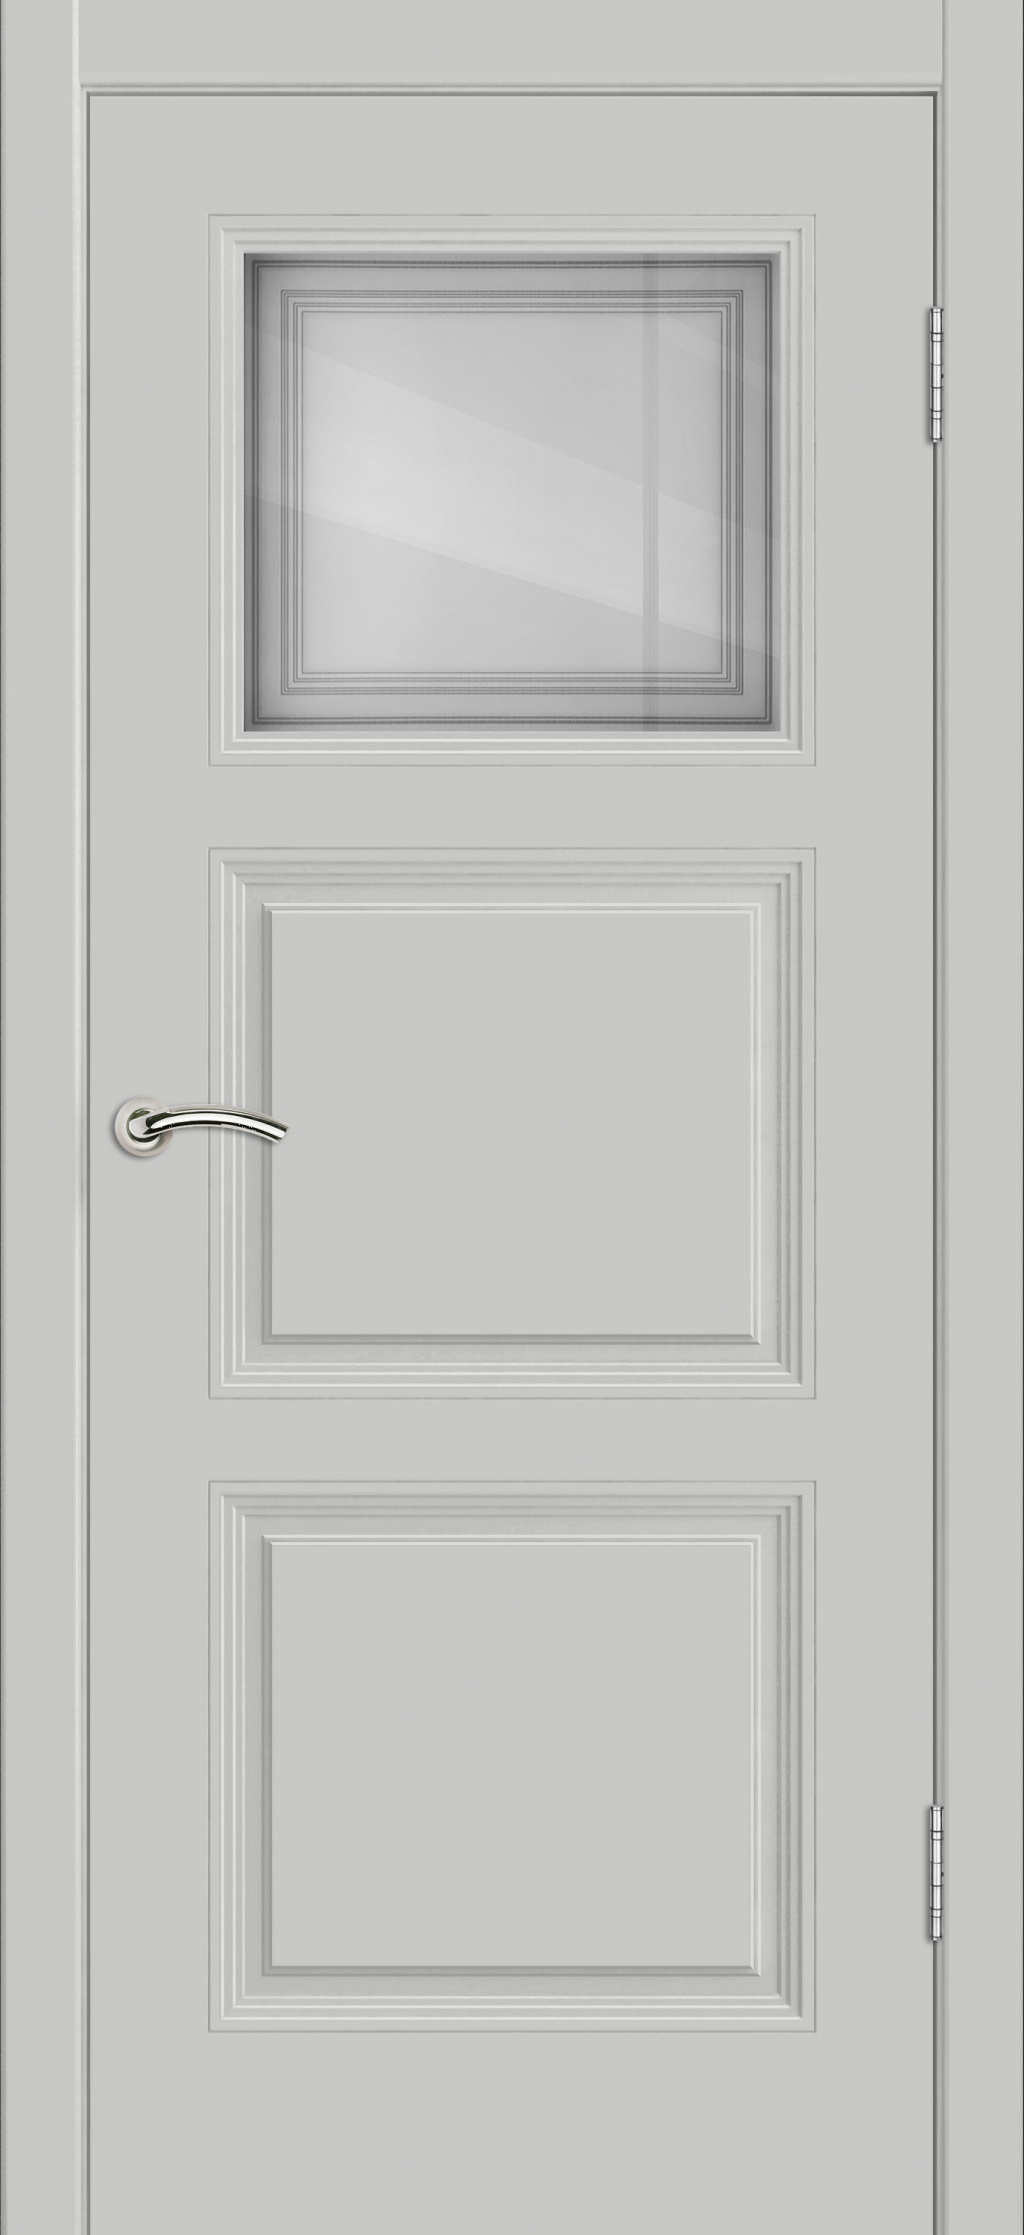 Cordondoor Межкомнатная дверь Vision 3 ПО Узор 1-1, арт. 19309 - фото №3